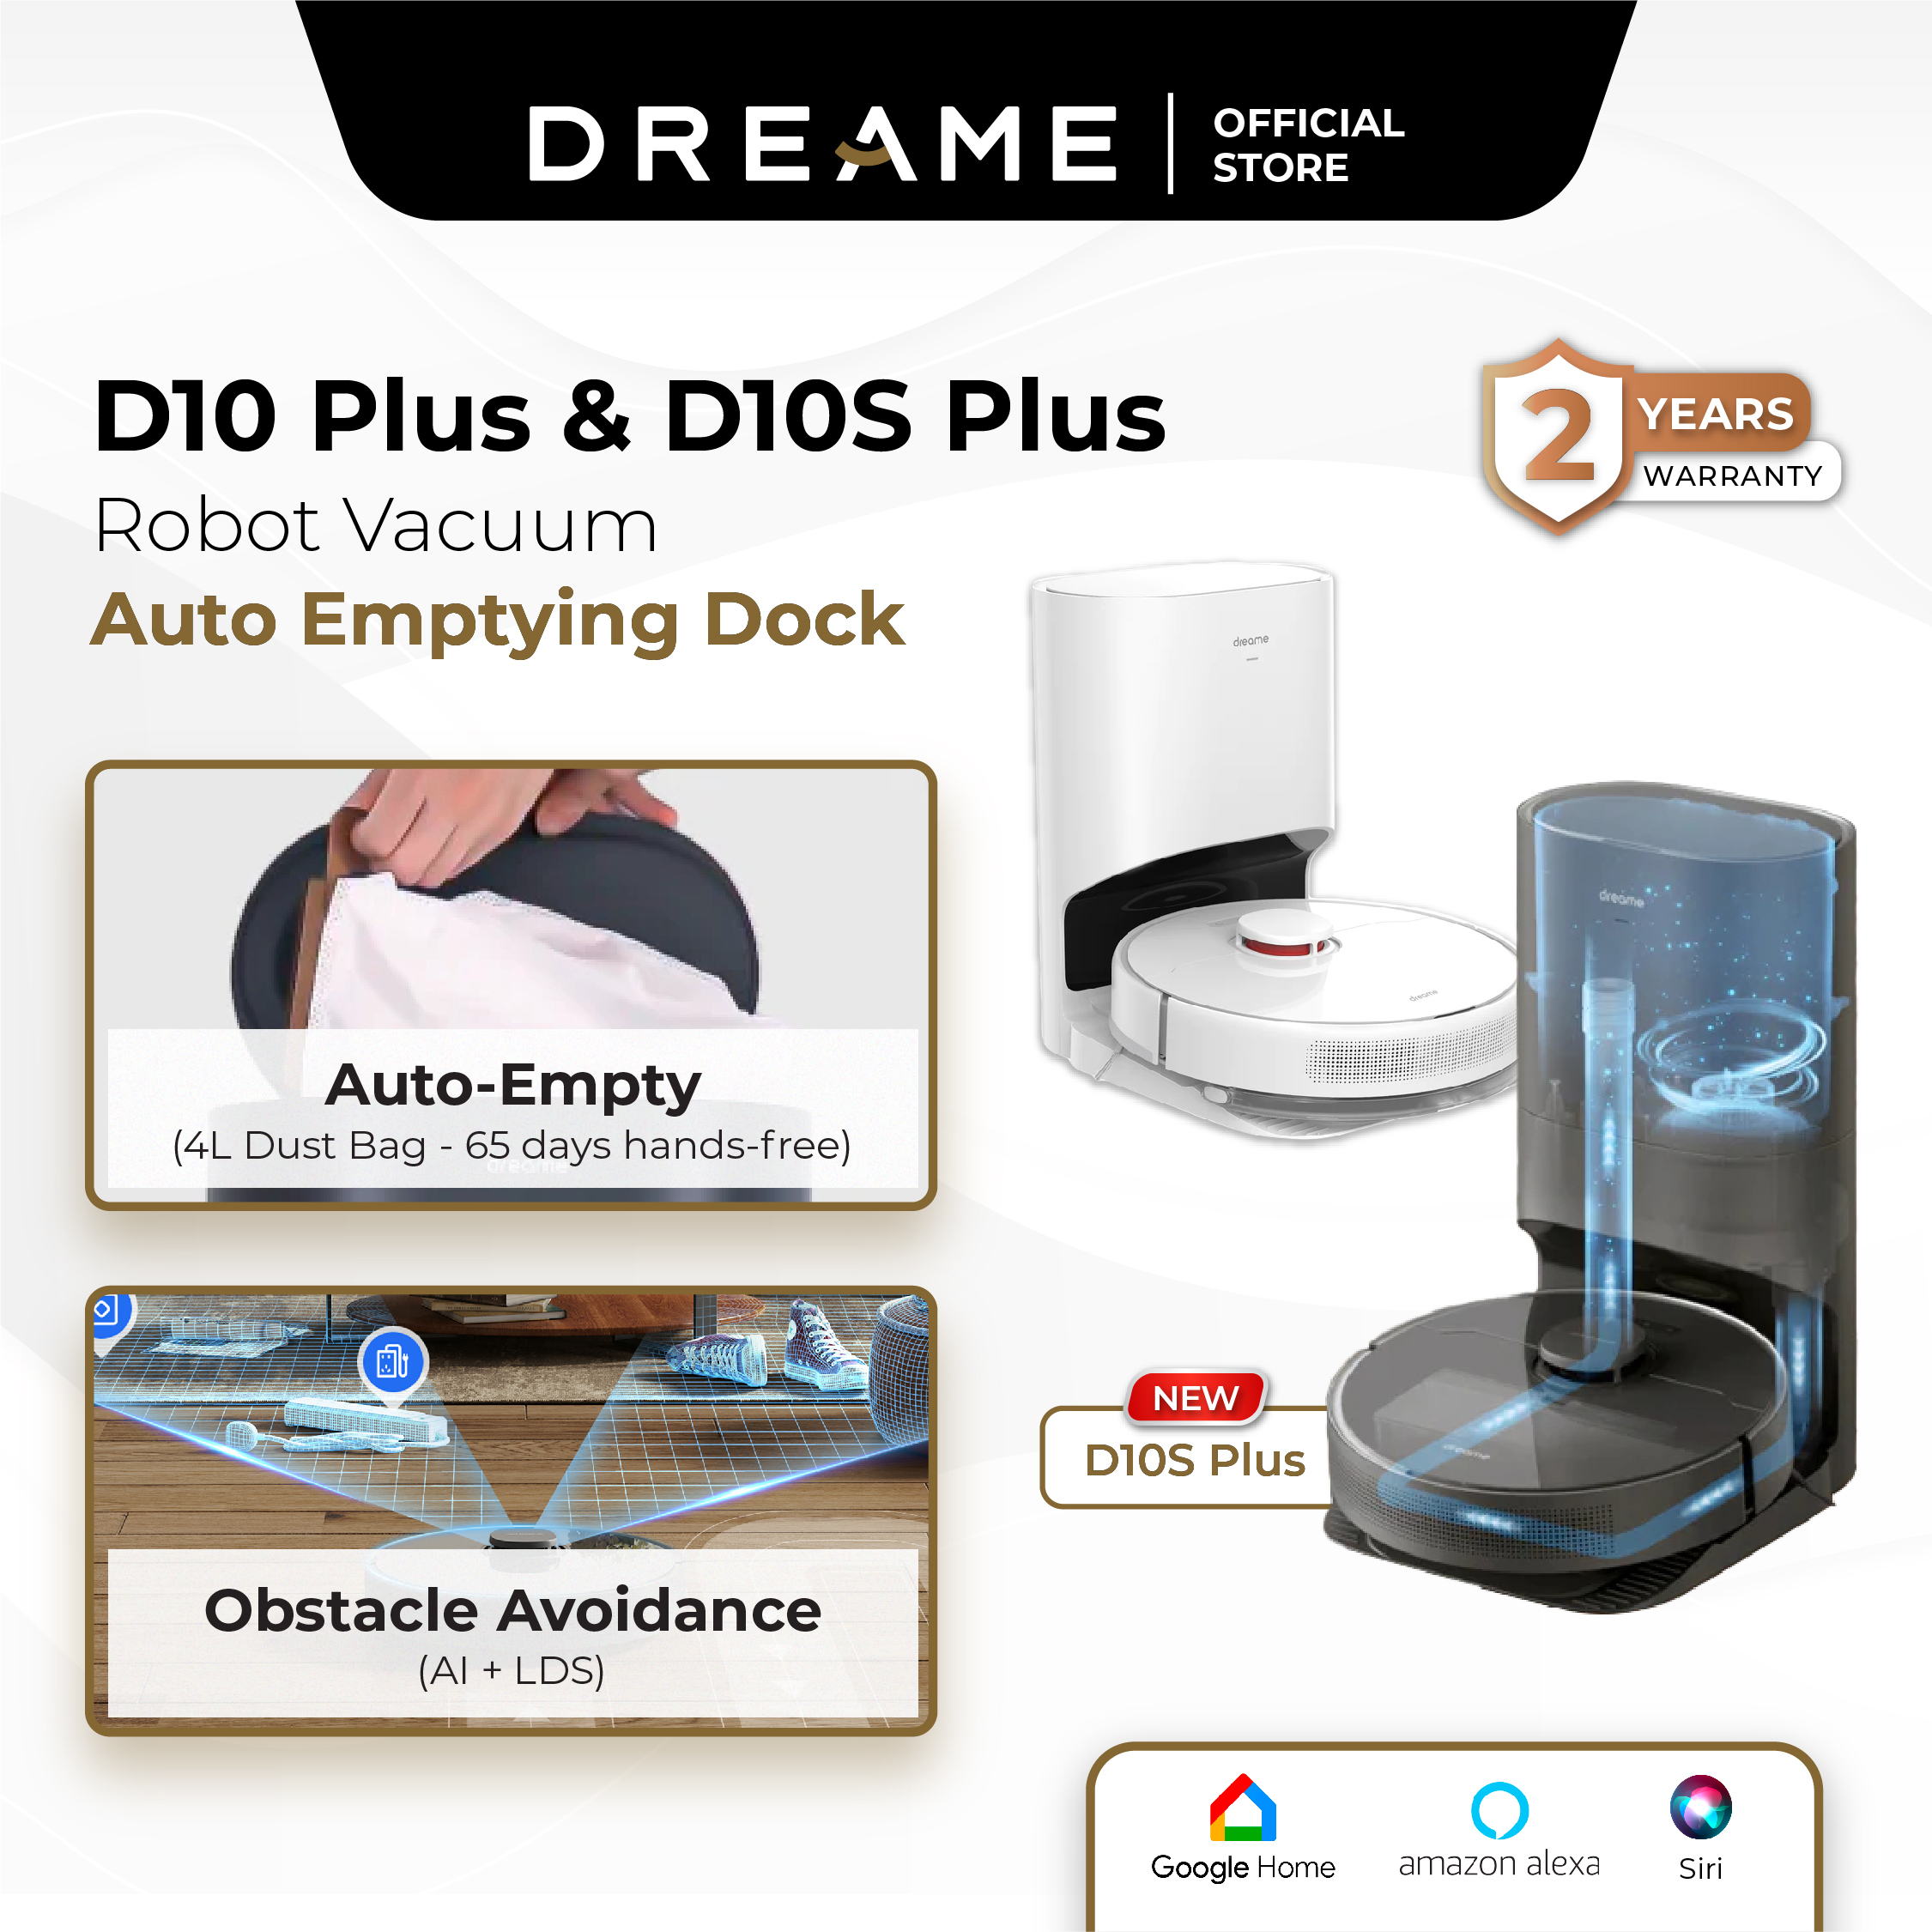 D10 Plus Robot Vacuum – Dreame